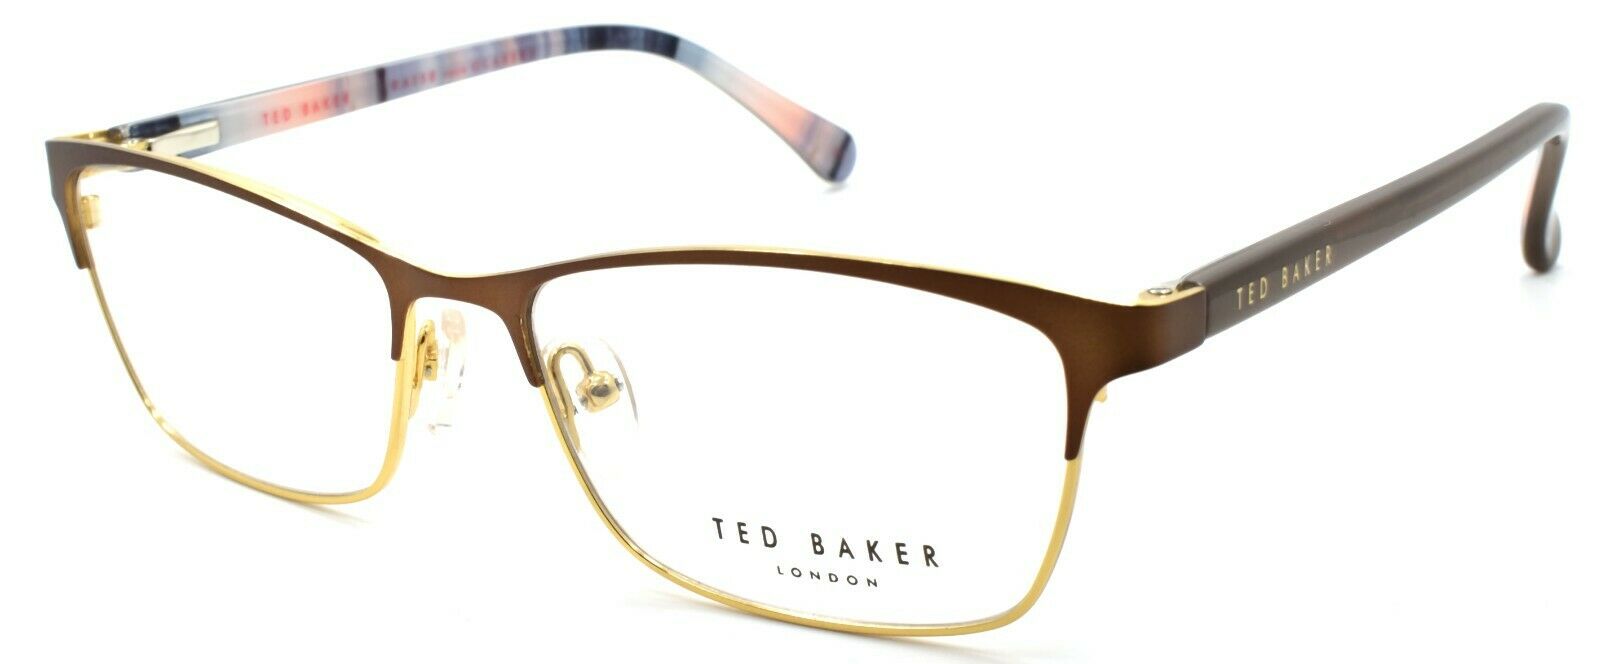 1-Ted Baker Luna 2231 176 Women's Eyeglasses Frames 53-15-135 Brown / Gold-4894327181230-IKSpecs